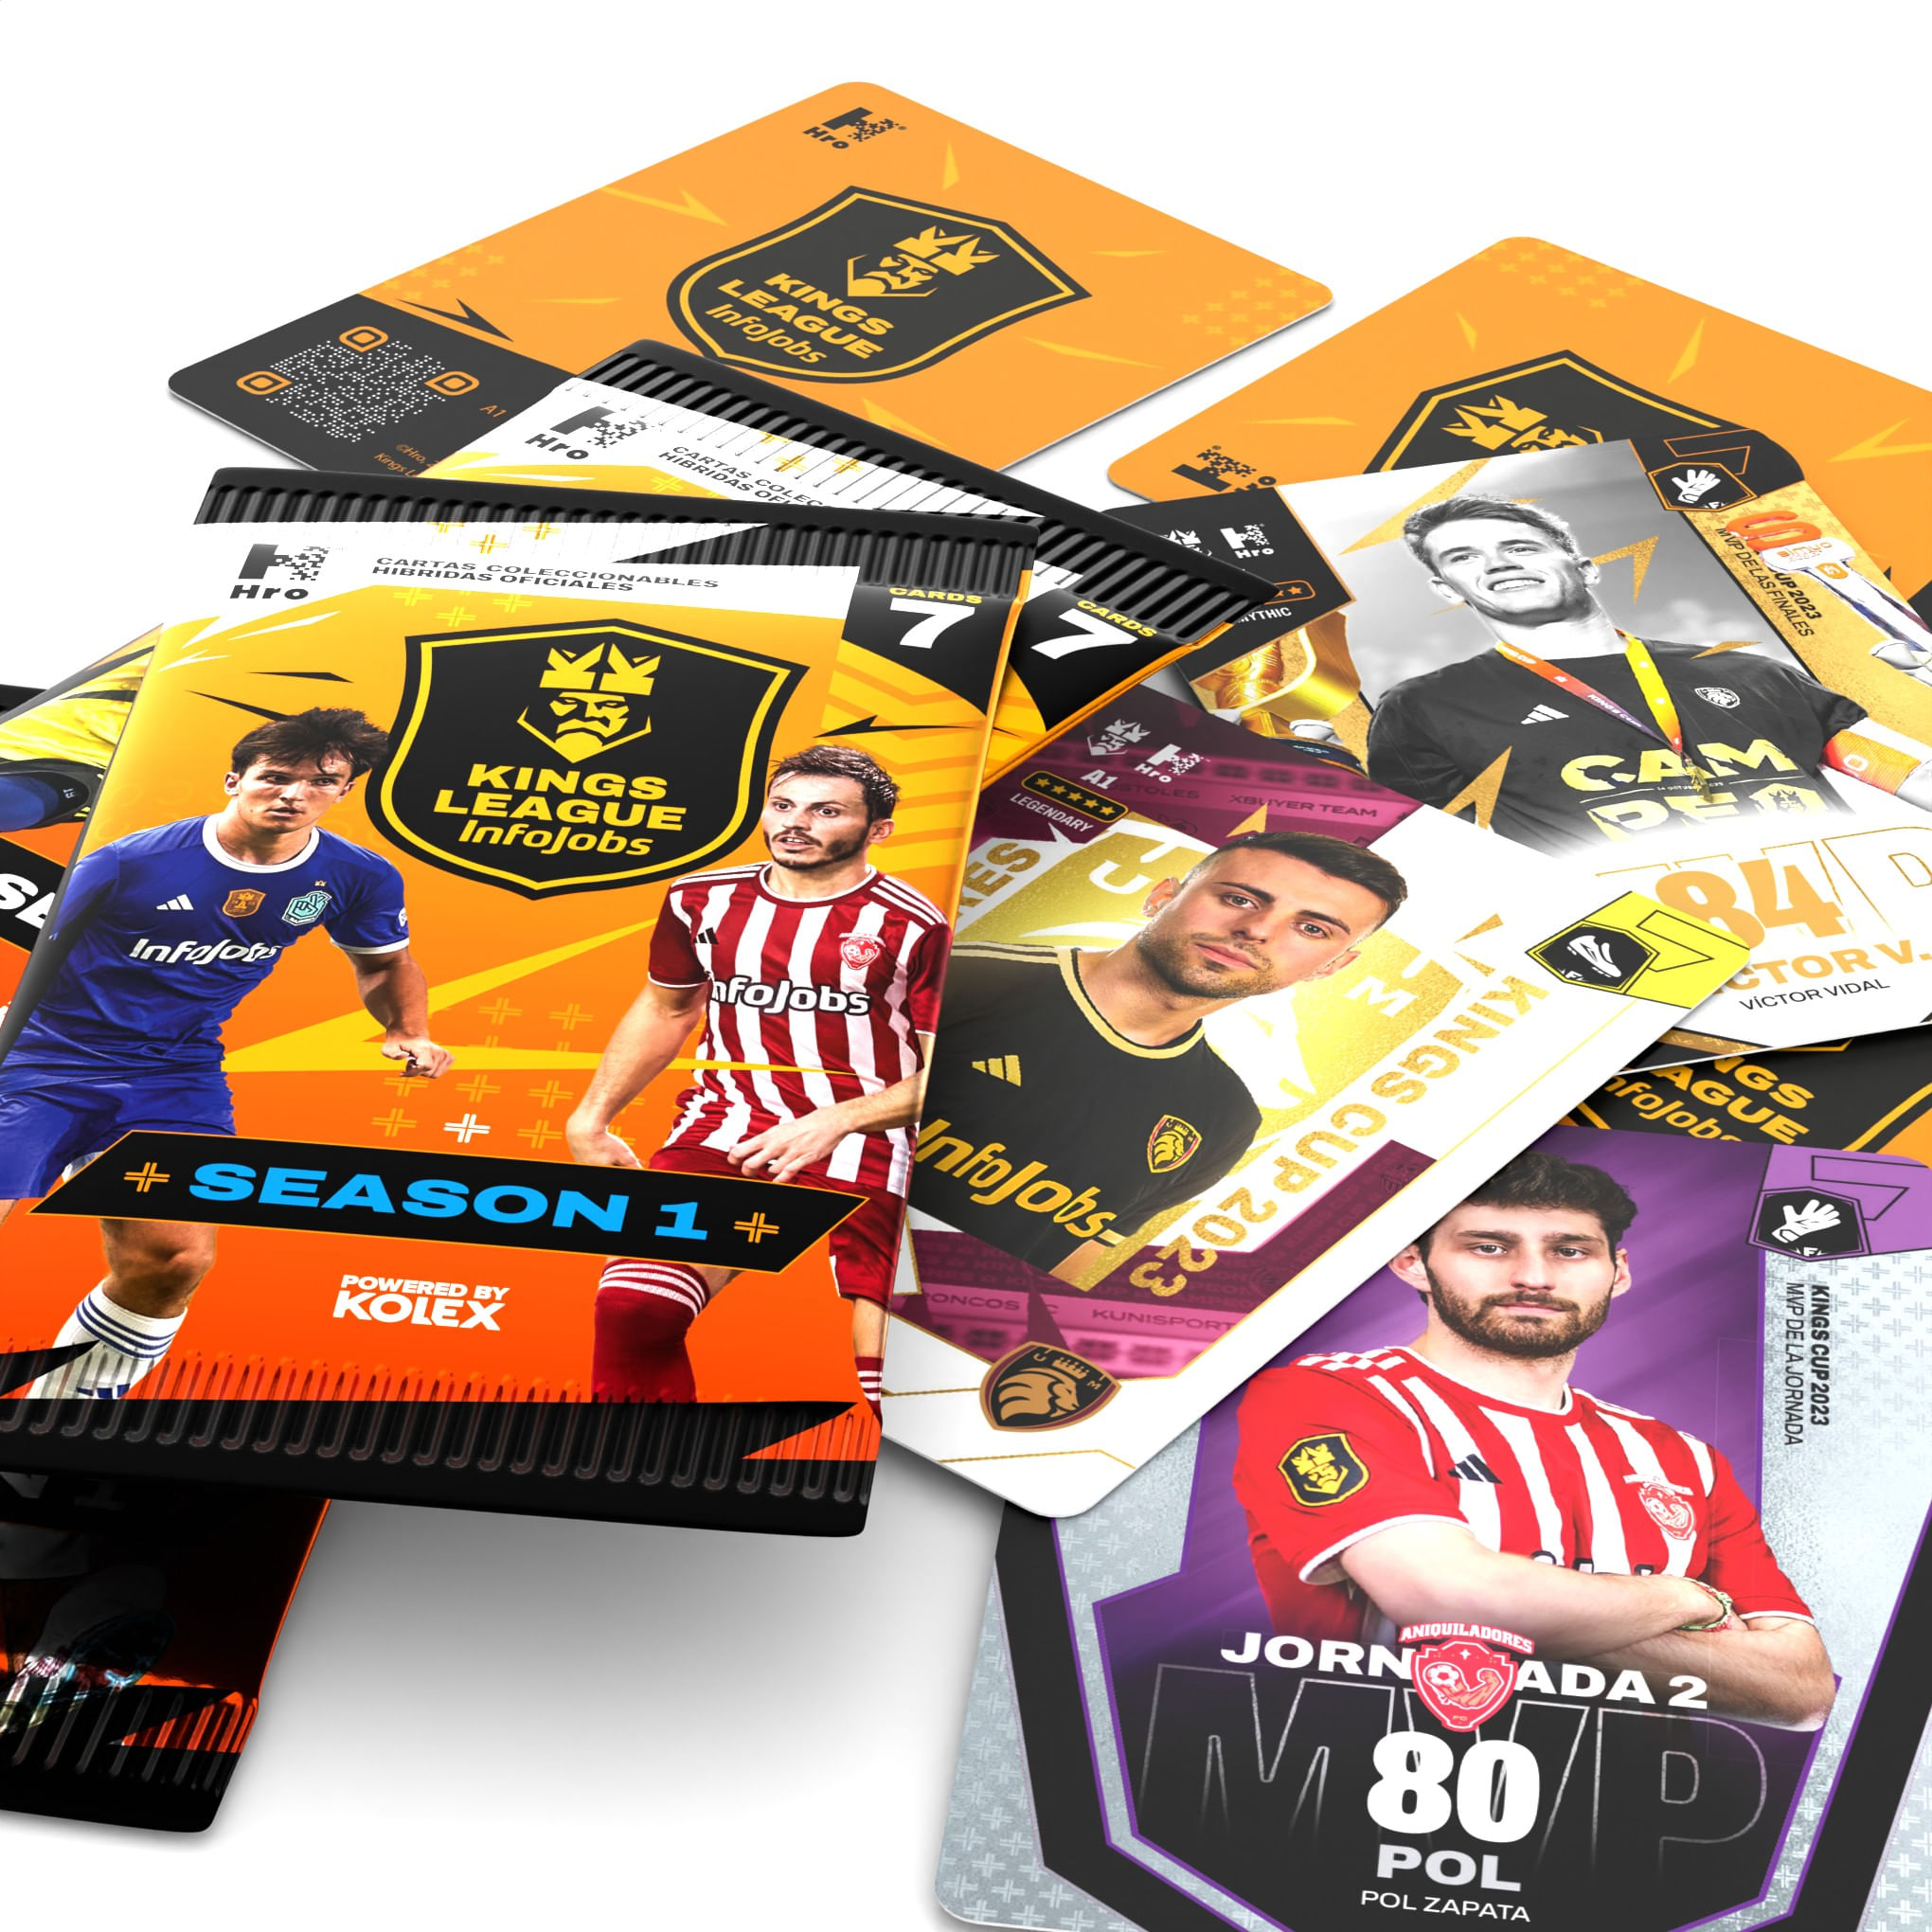 EL TRONO on X: 🎙️#KingsLeague  EXCLUSIVA 💣 📌 La Kings League lanzará  su propia colección de cartas (cromos) en 2024 📌 Además habrá unas  unidades limitadas de cromos que estarán firmados